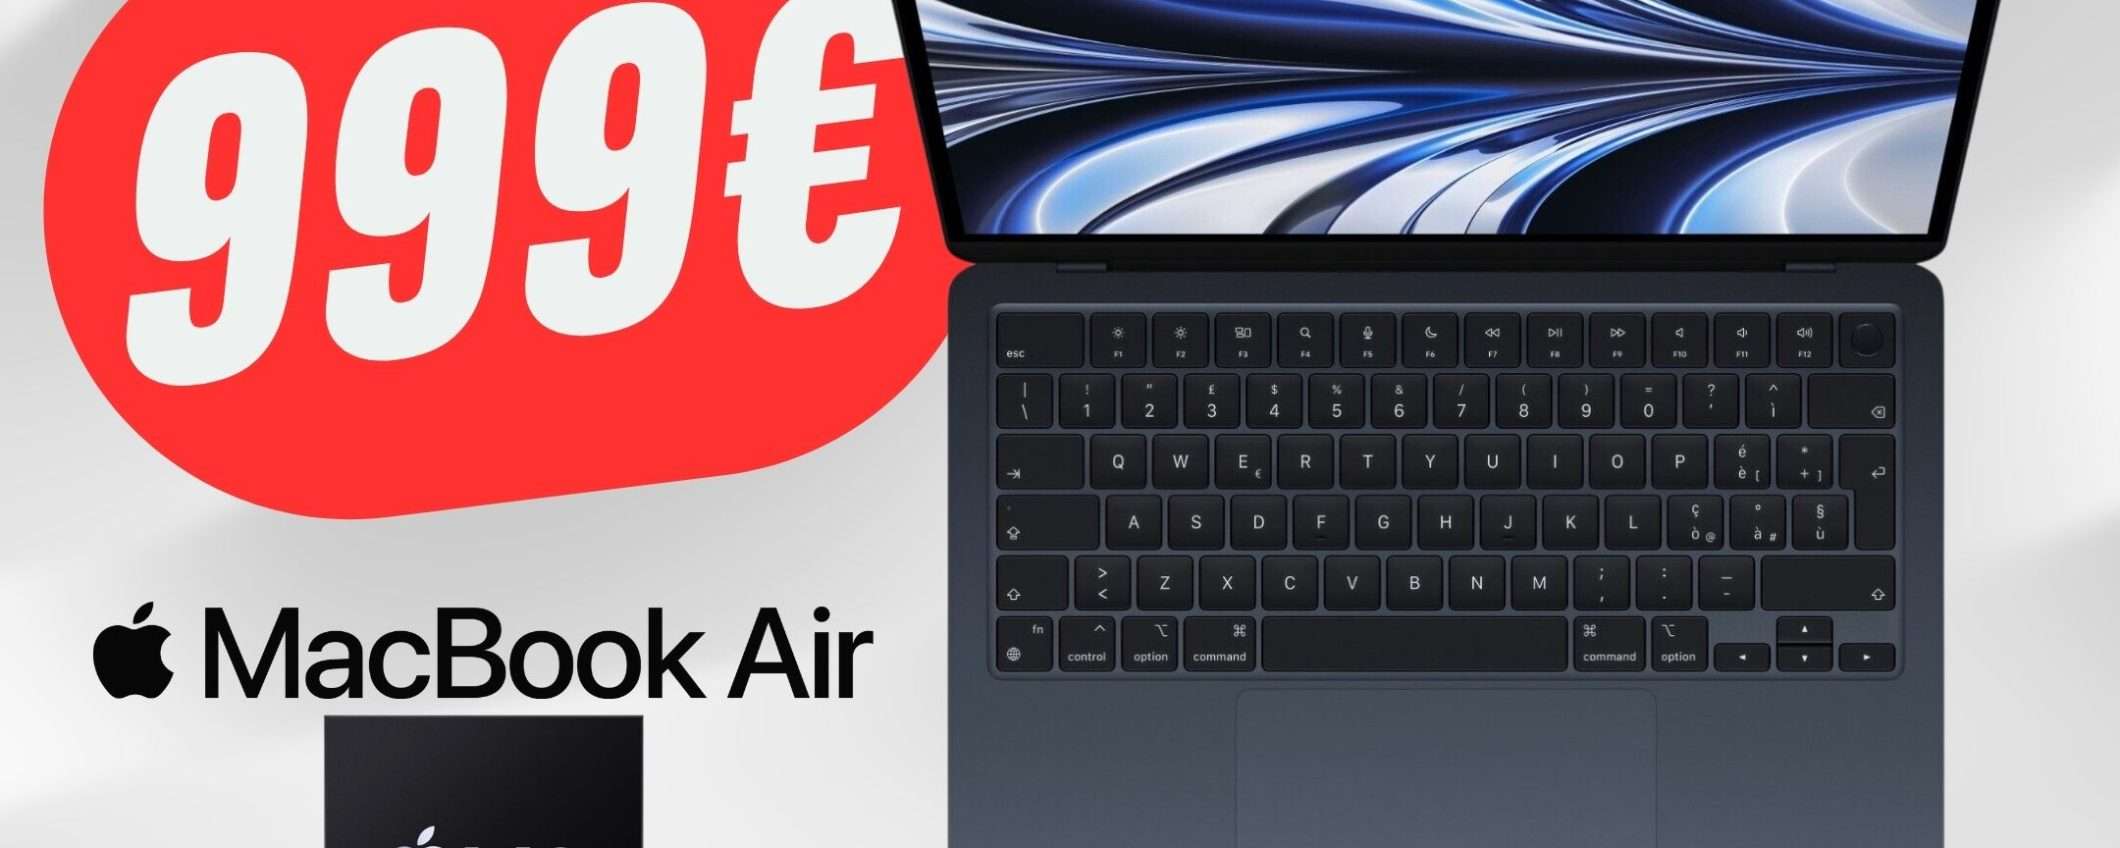 MacBook Air M2 a 999€?! Il PREZZO BOMBA arriva da eBay!